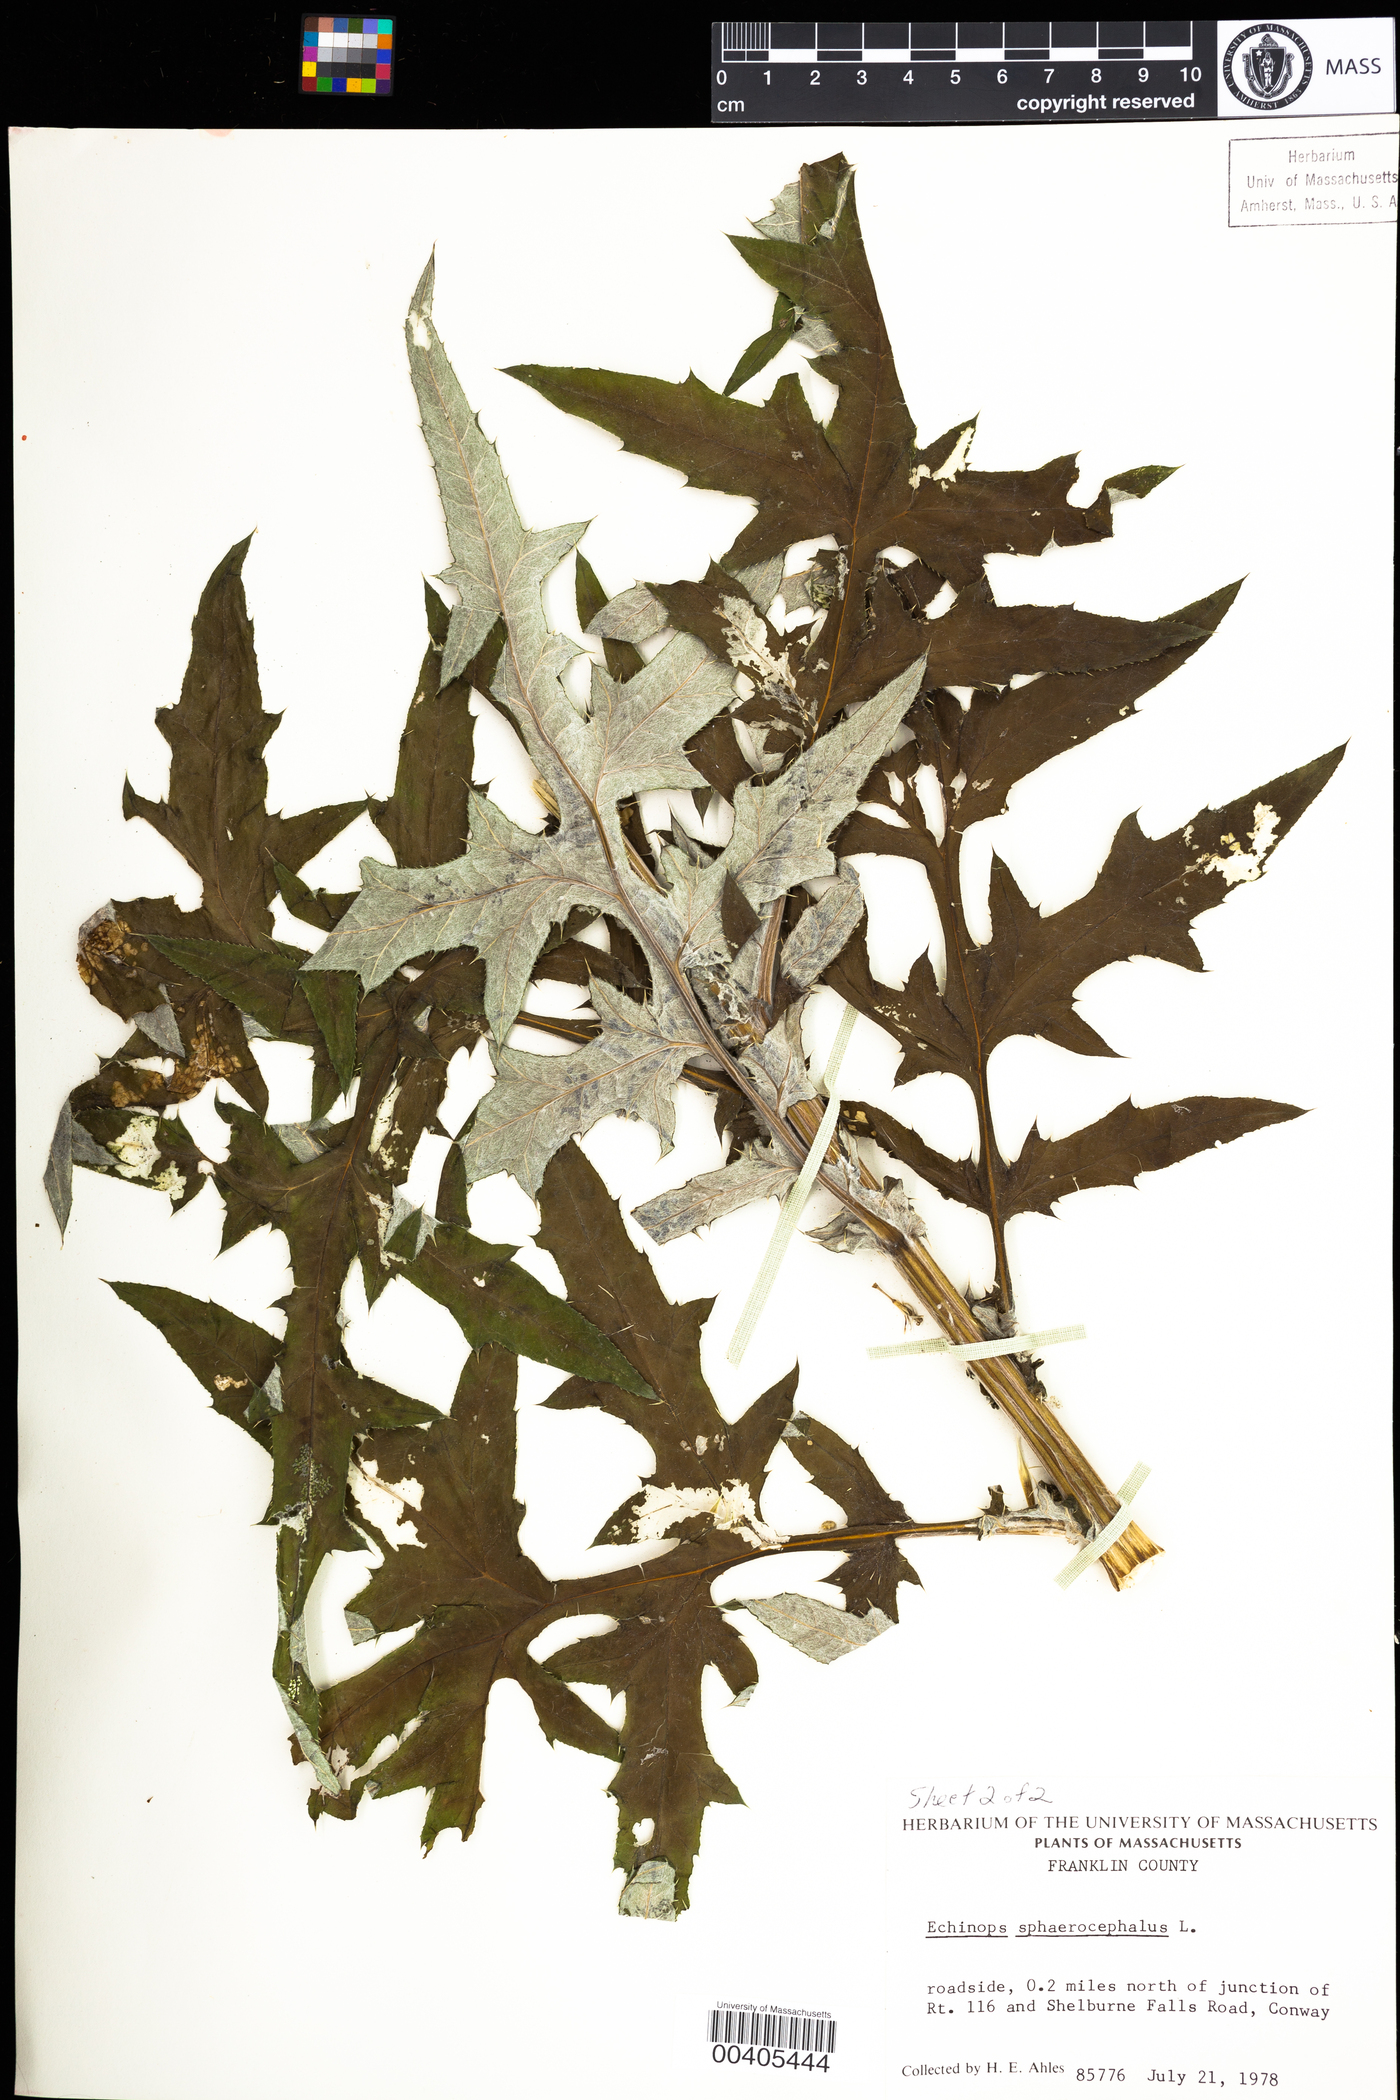 Echinops image